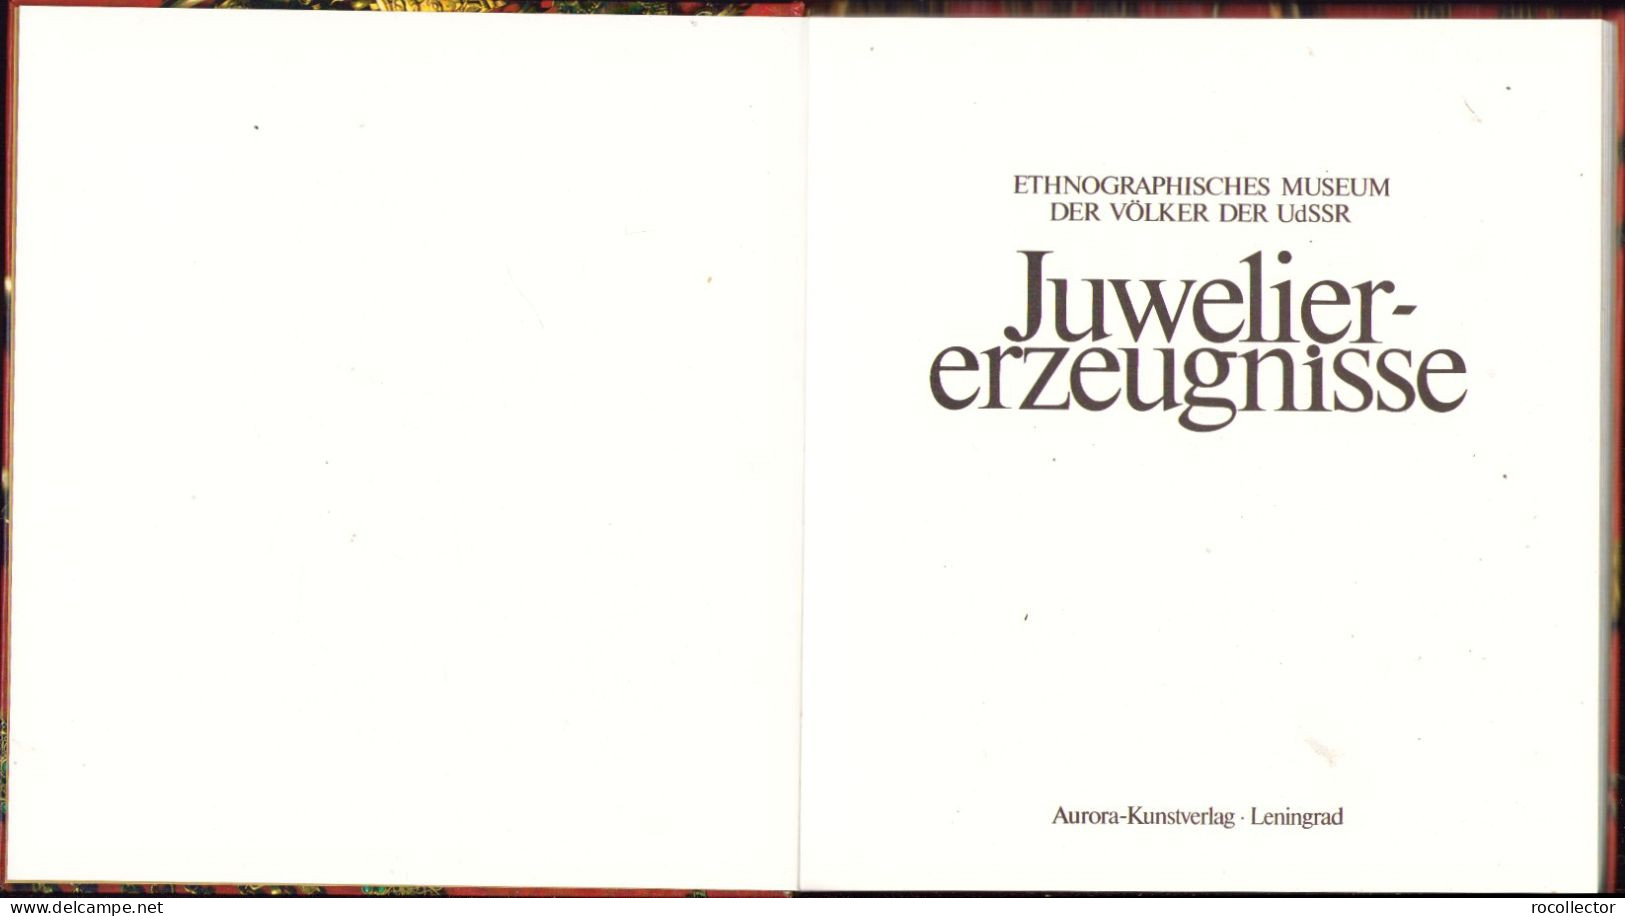 Juwelier-erzeugnisse Zusammengestelt Von Galina Komleva 1988 Ethnographisches Museum Der Völker Der UdSSR Leningrad - Alte Bücher